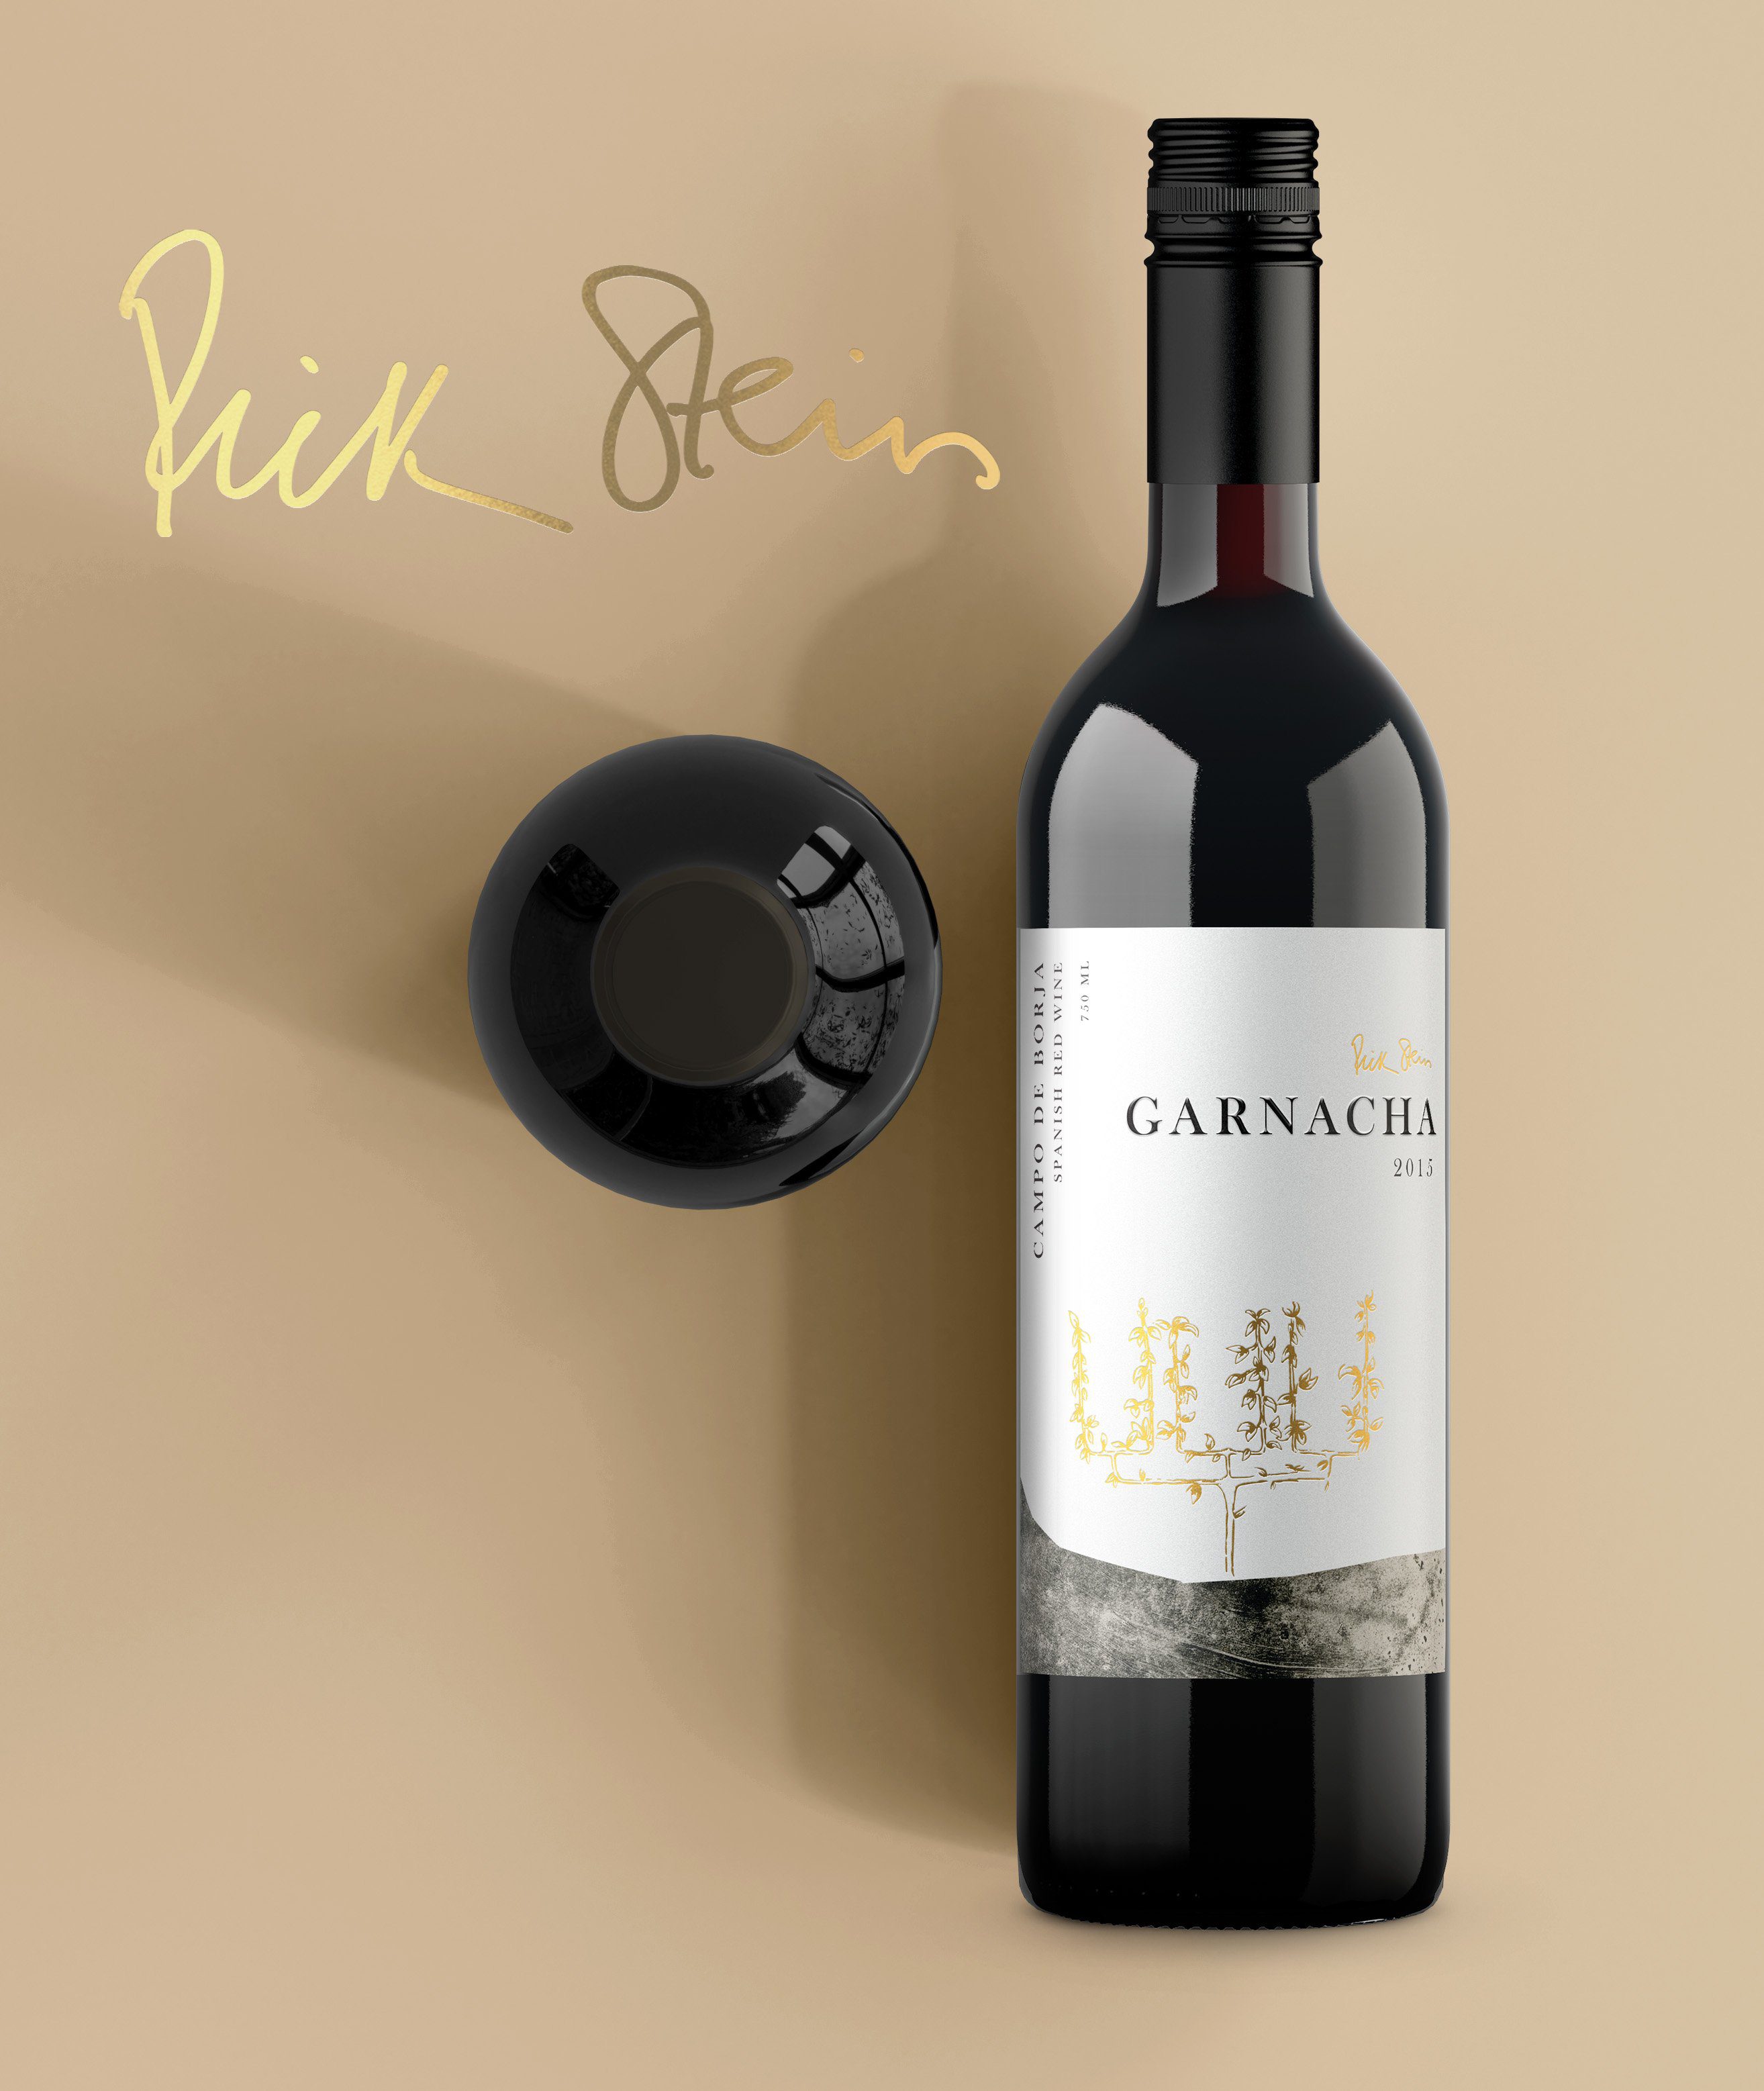 Rick Stein Garnacha wine branding